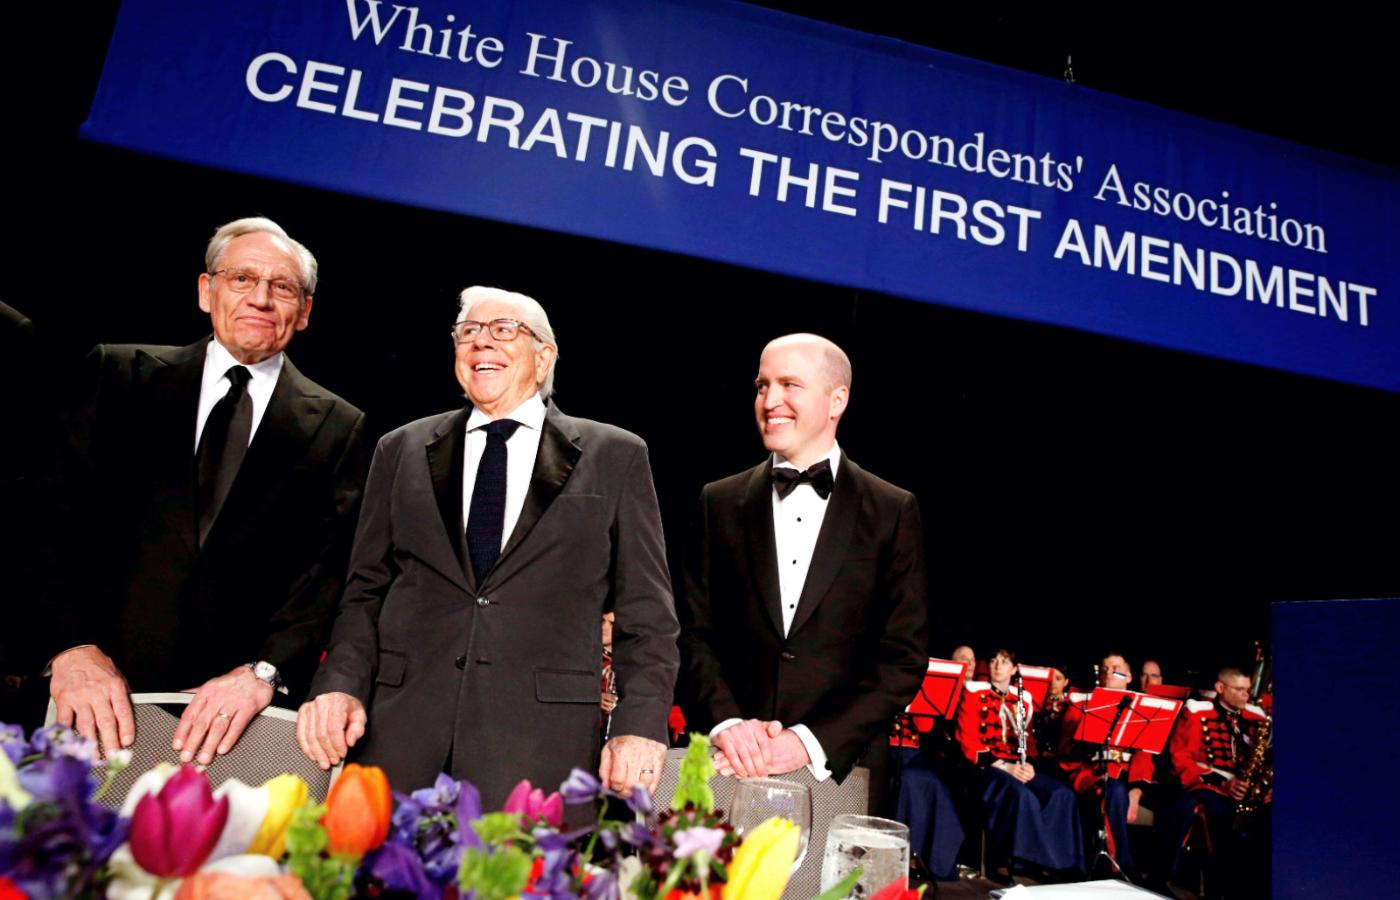 Od lewej Bob Woodward i Carl Bernstein. Obok Jeff Mason, szef Stowarzyszenia Korespondentów w Białym Domu